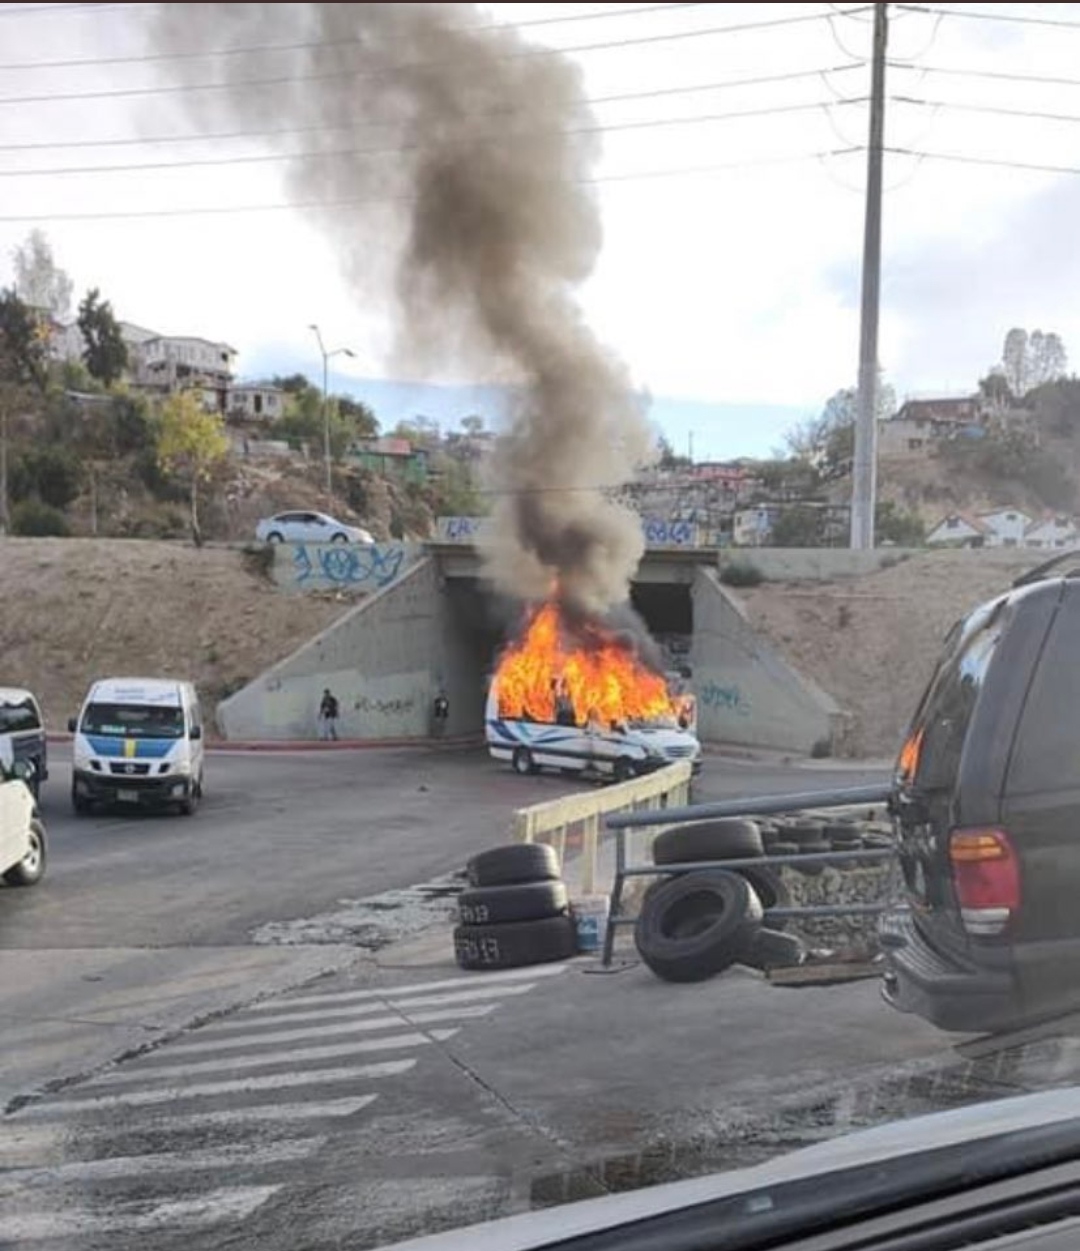 El viernes 12 de agosto se registraron distintos hechos violentos en varias ciudades de Baja California en donde hubo la quema de varios vehículos. (Foto: @queentrizz)